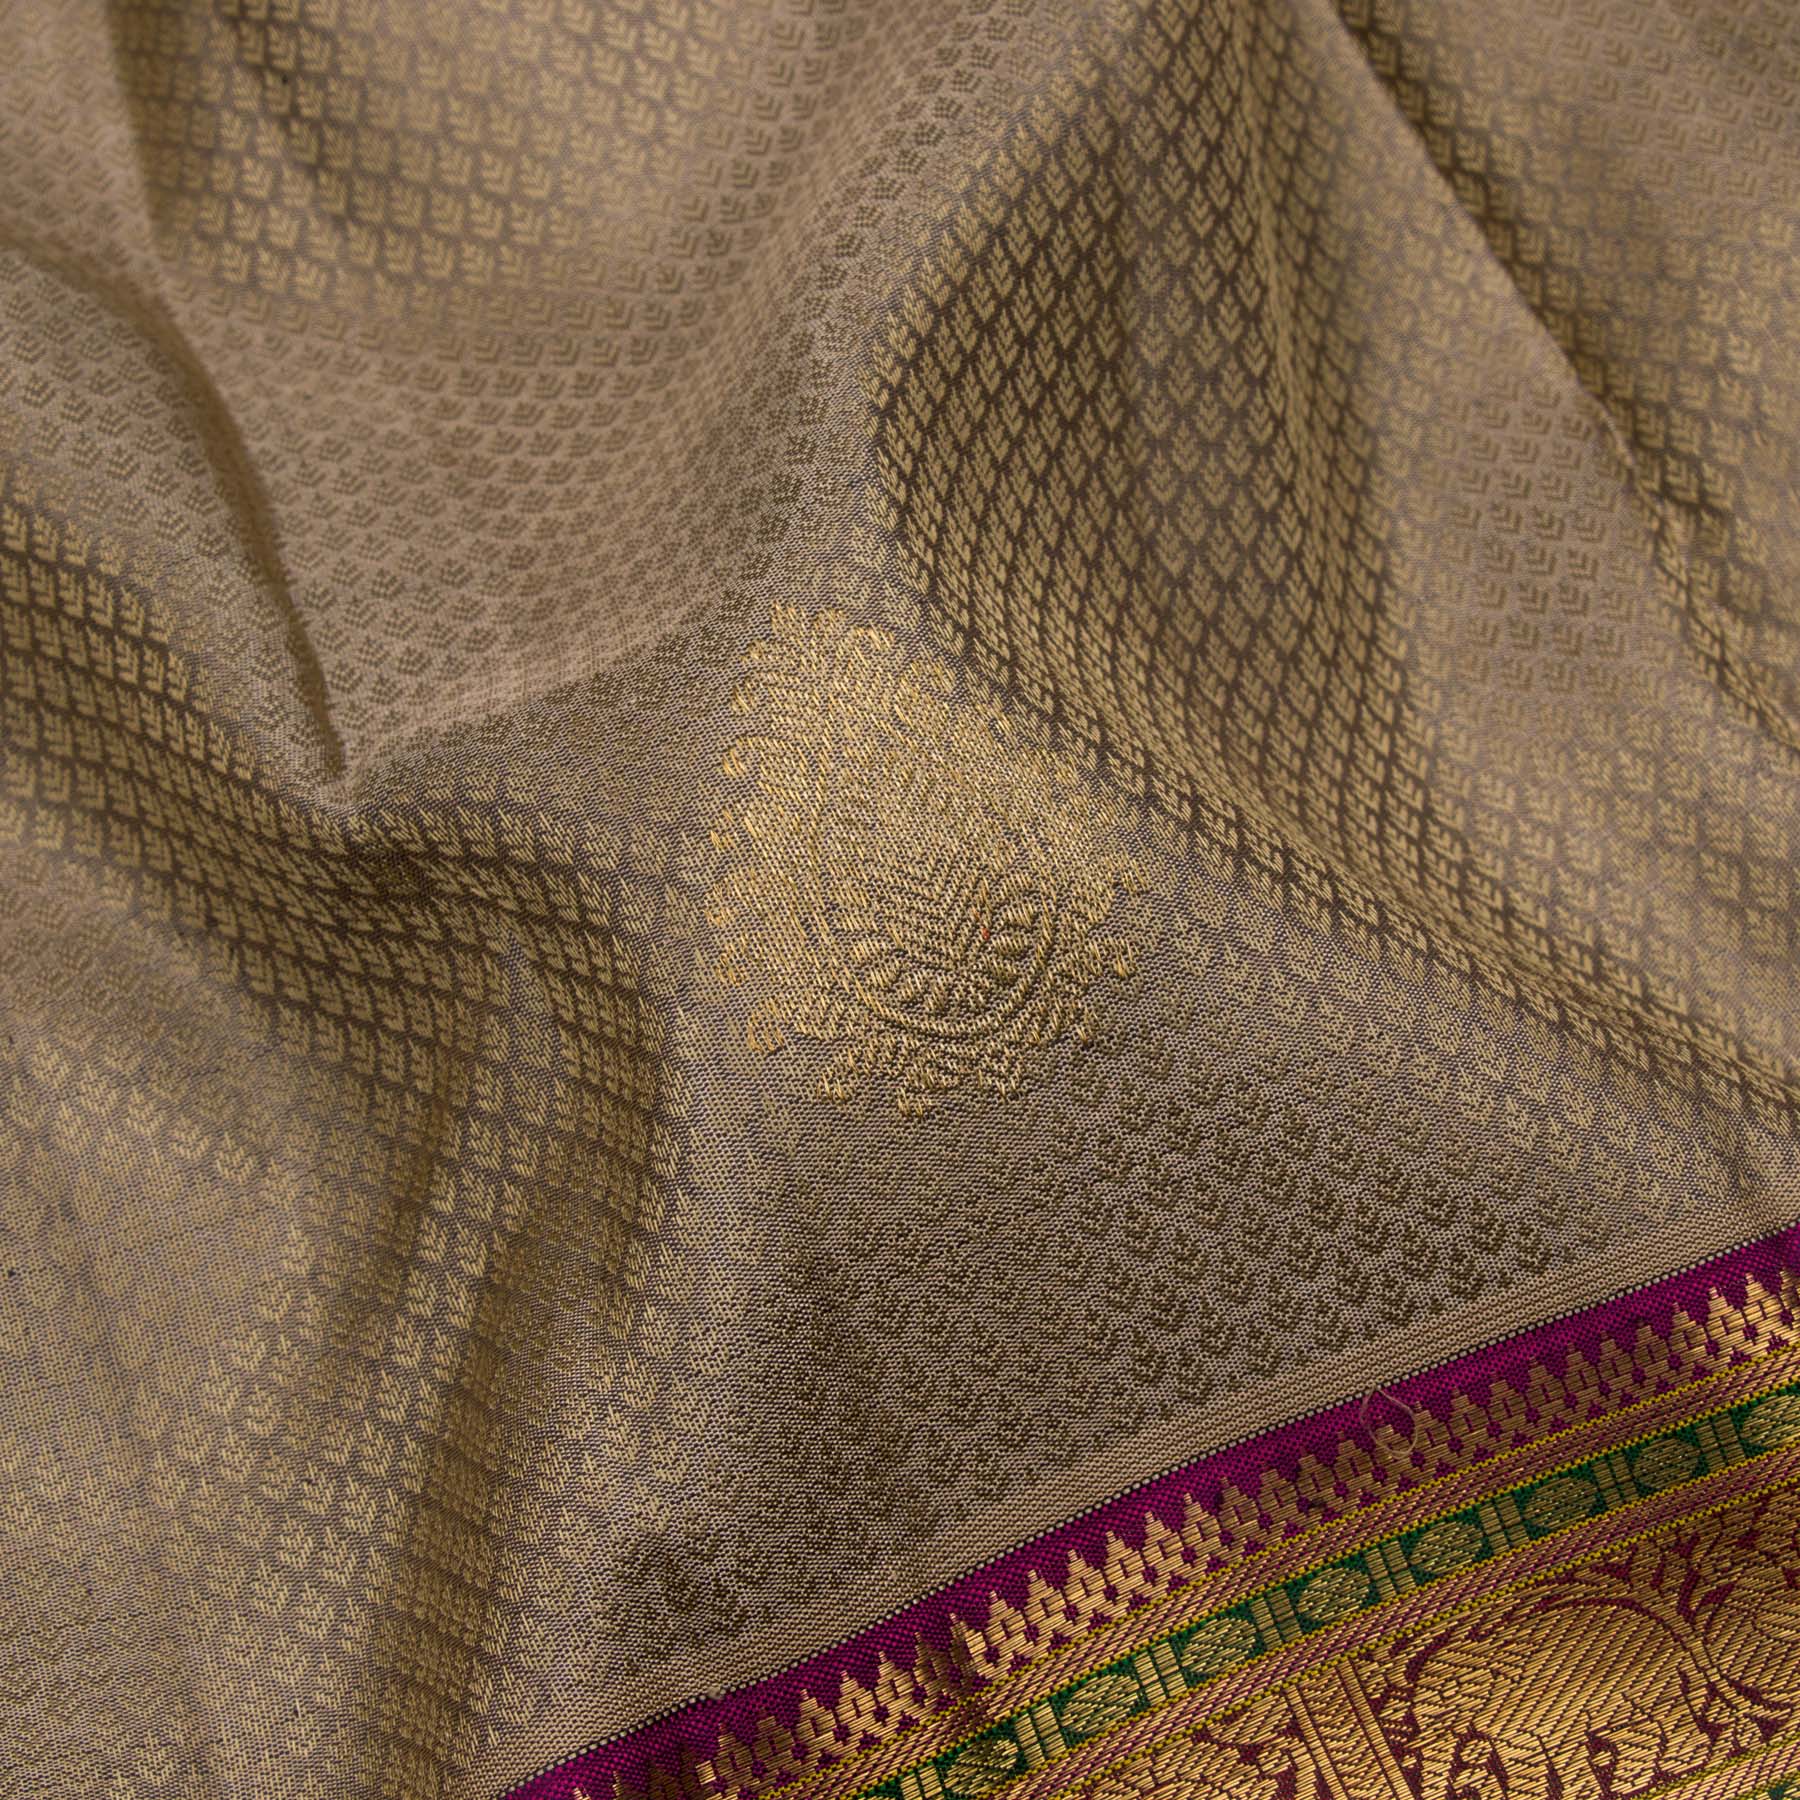 Kanakavalli Kanjivaram Silk Sari 22-110-HS001-01777 - Fabric View